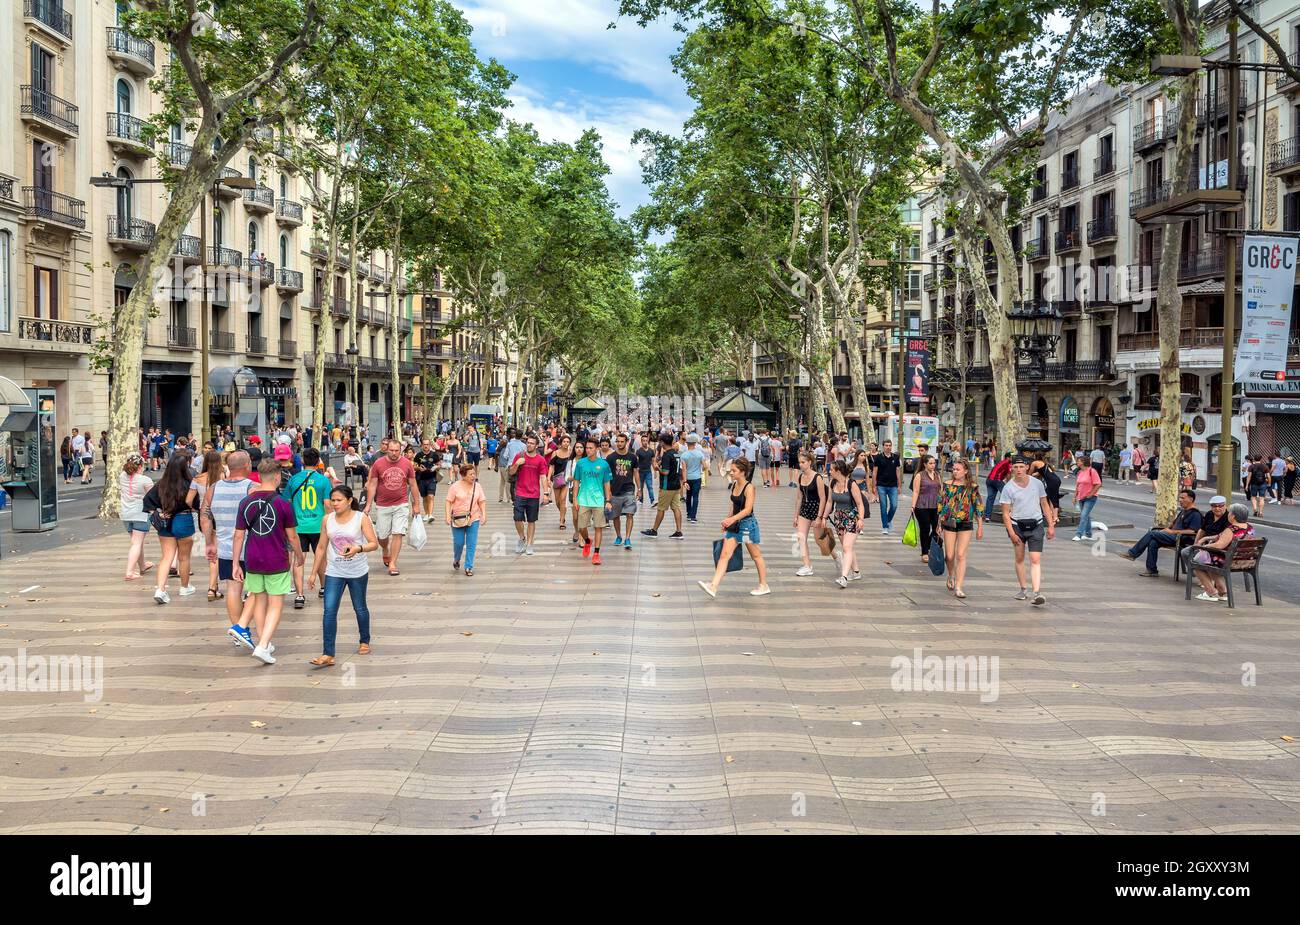 Barcelona, Spanien - 6. Juli 2017: Tagesansicht der berühmten Straße Las Ramblas in Barcelona, Spanien. Tausende von Menschen gehen täglich an dieser Fußgängerzone vorbei Stockfoto